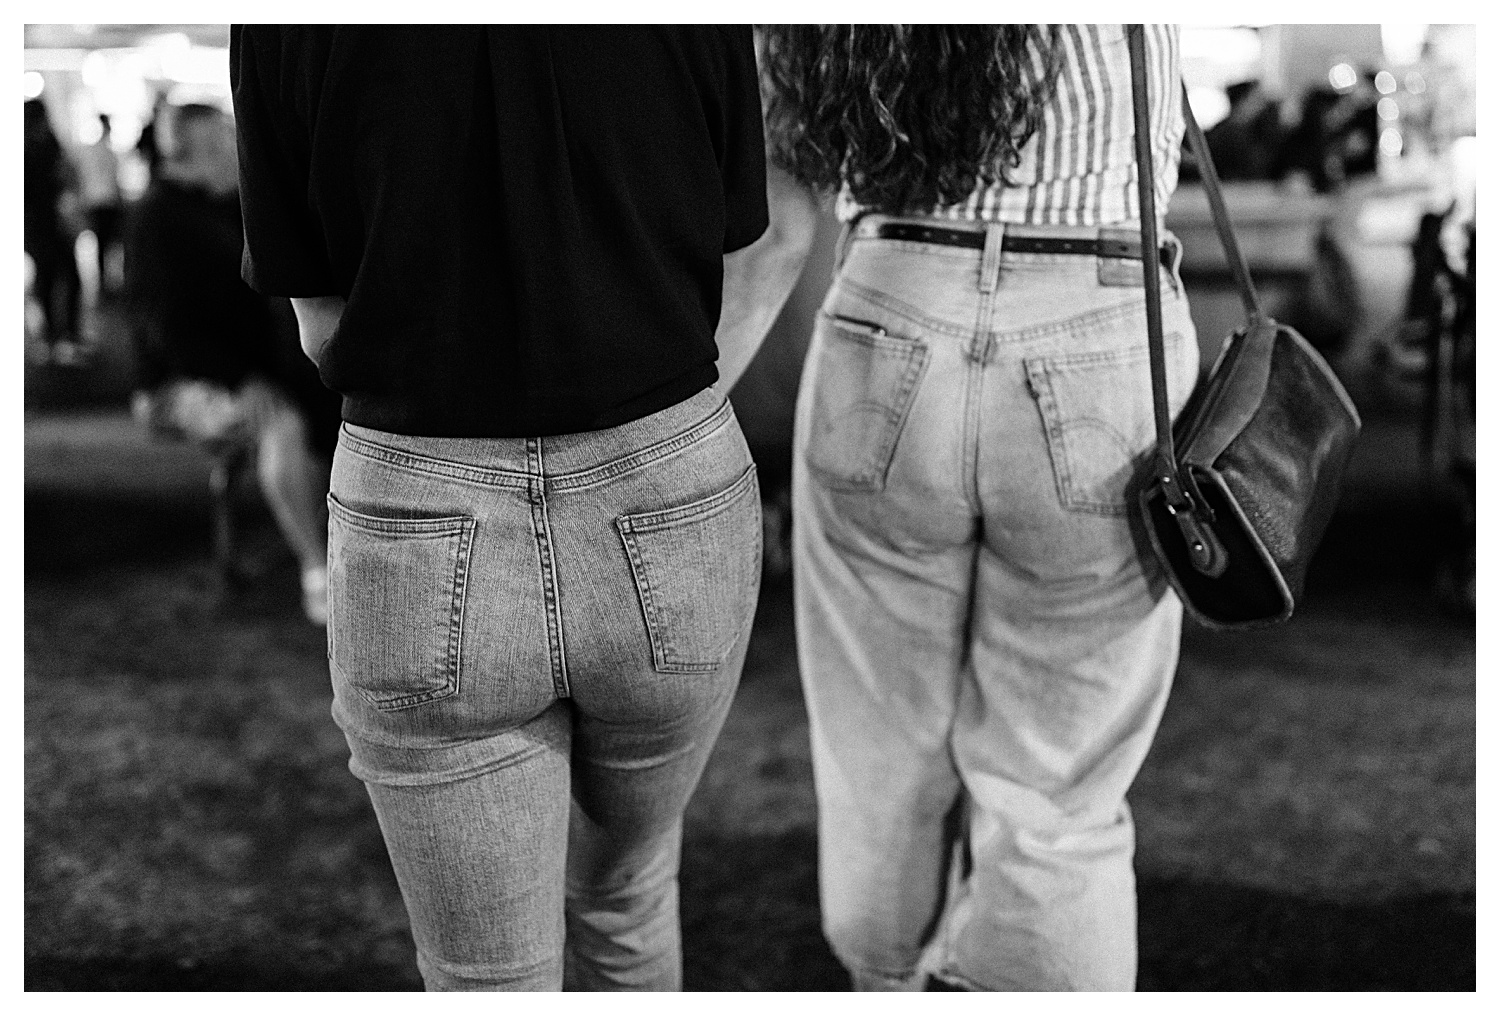 butts in jeans oc fair couples photos